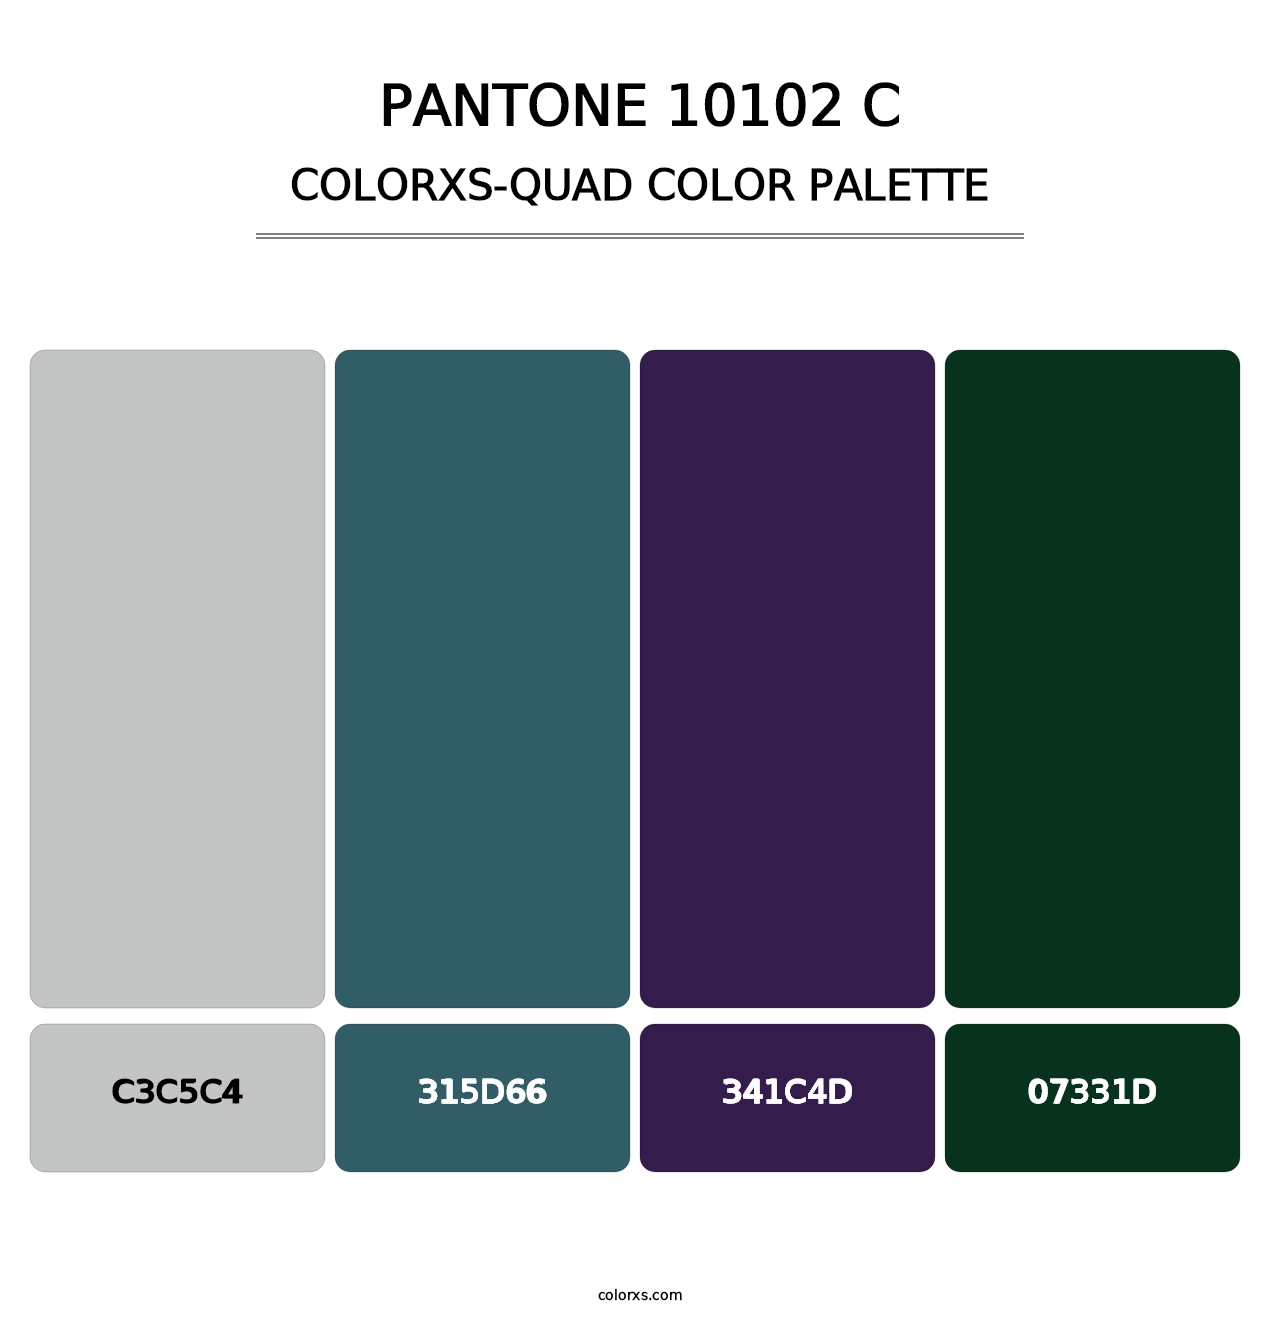 PANTONE 10102 C - Colorxs Quad Palette